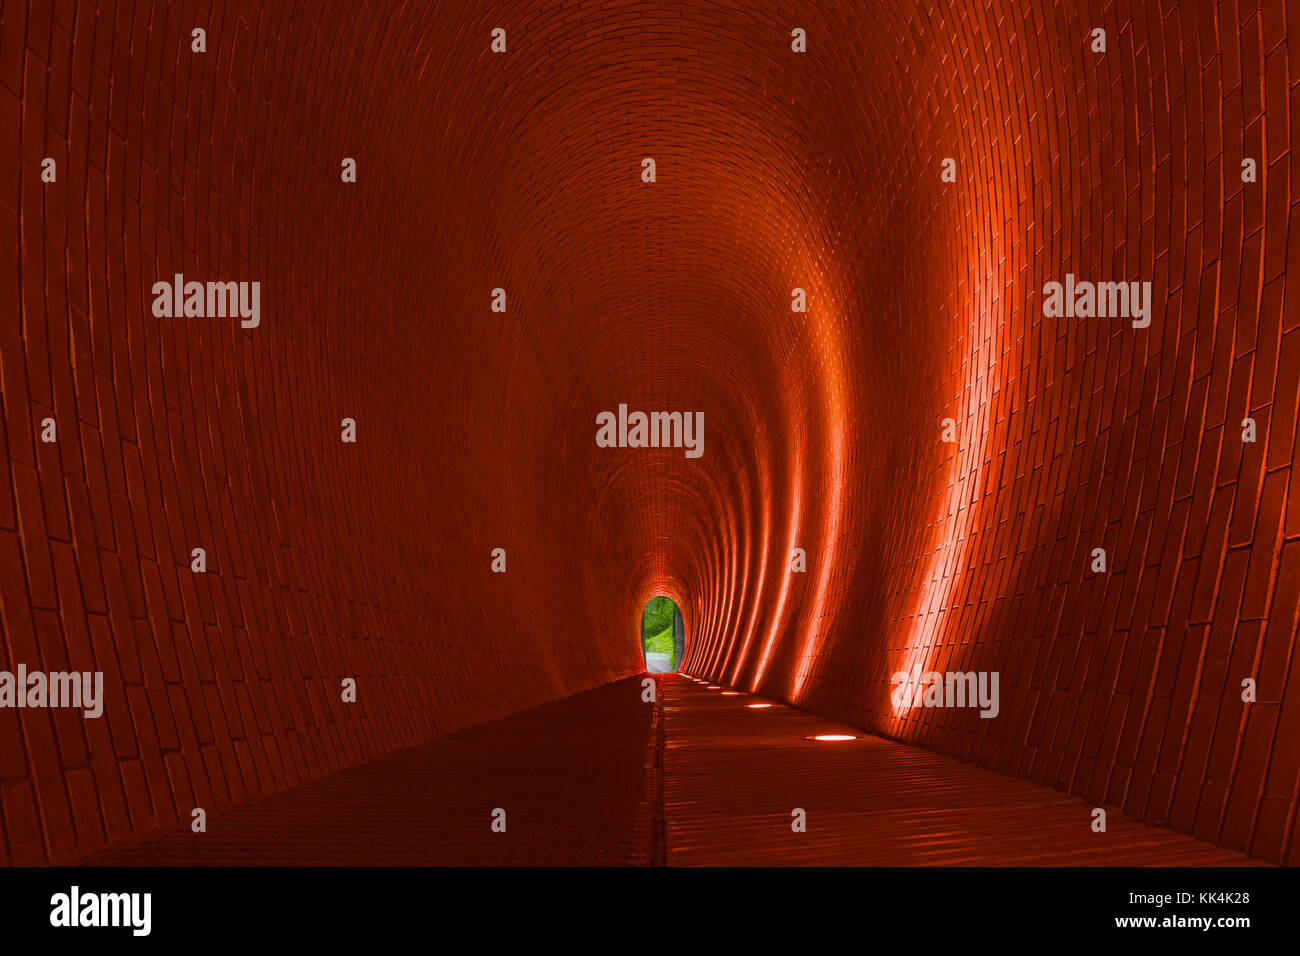 Vacía arcos en ladrillo largo túnel peatonal, Praga. naranja de las paredes de ladrillo, tira de Iluminación lámpara de arco brillante. Metro misterioso sendero para el caminante Foto de stock